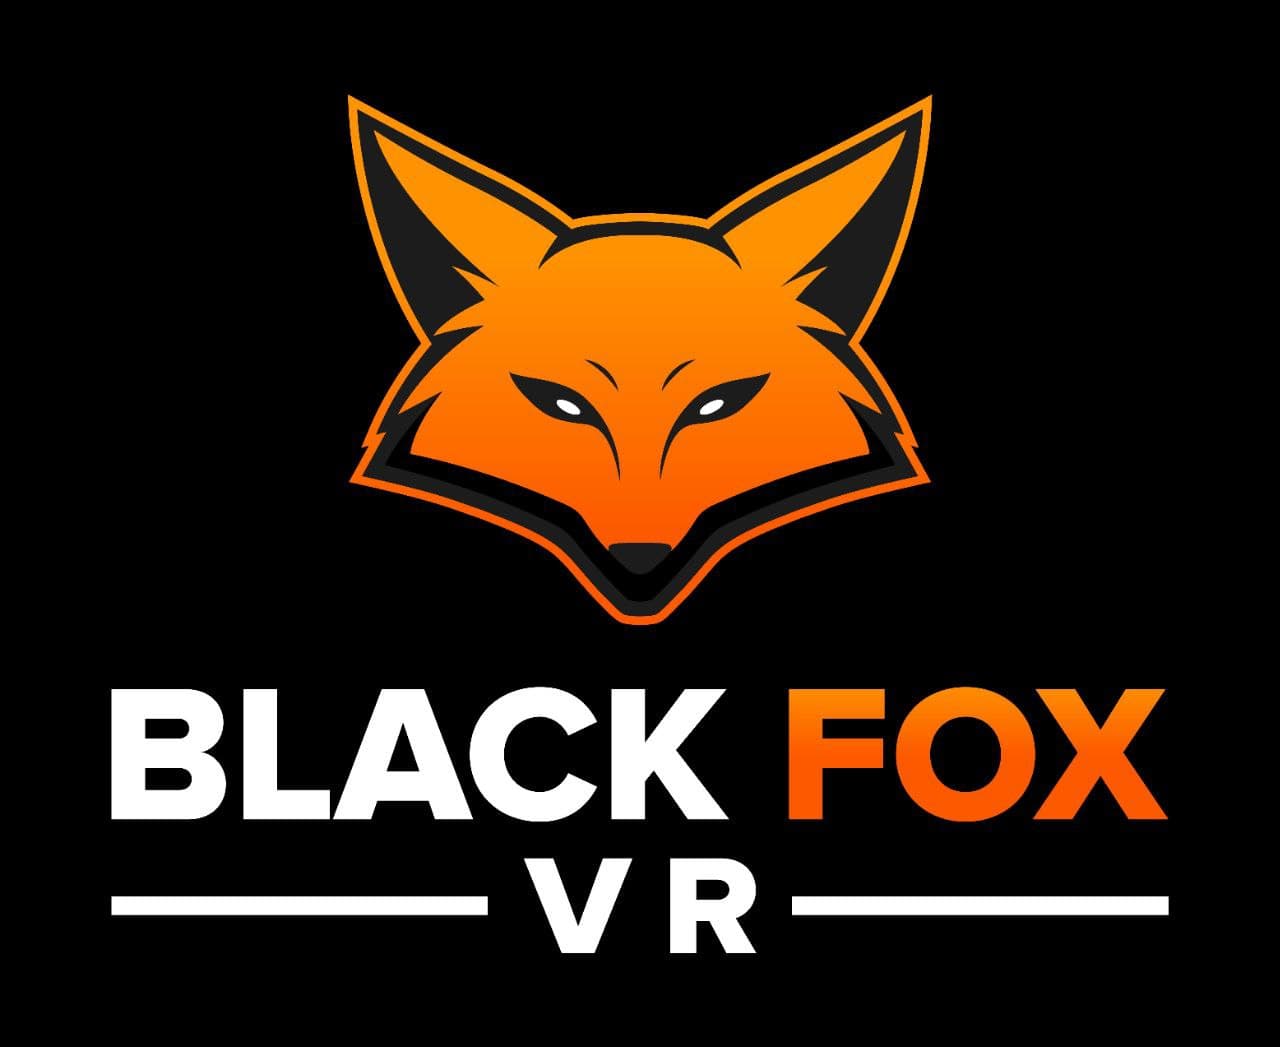 Black FoX - это самый технологичный клуб виртуальной реальности в Харькове